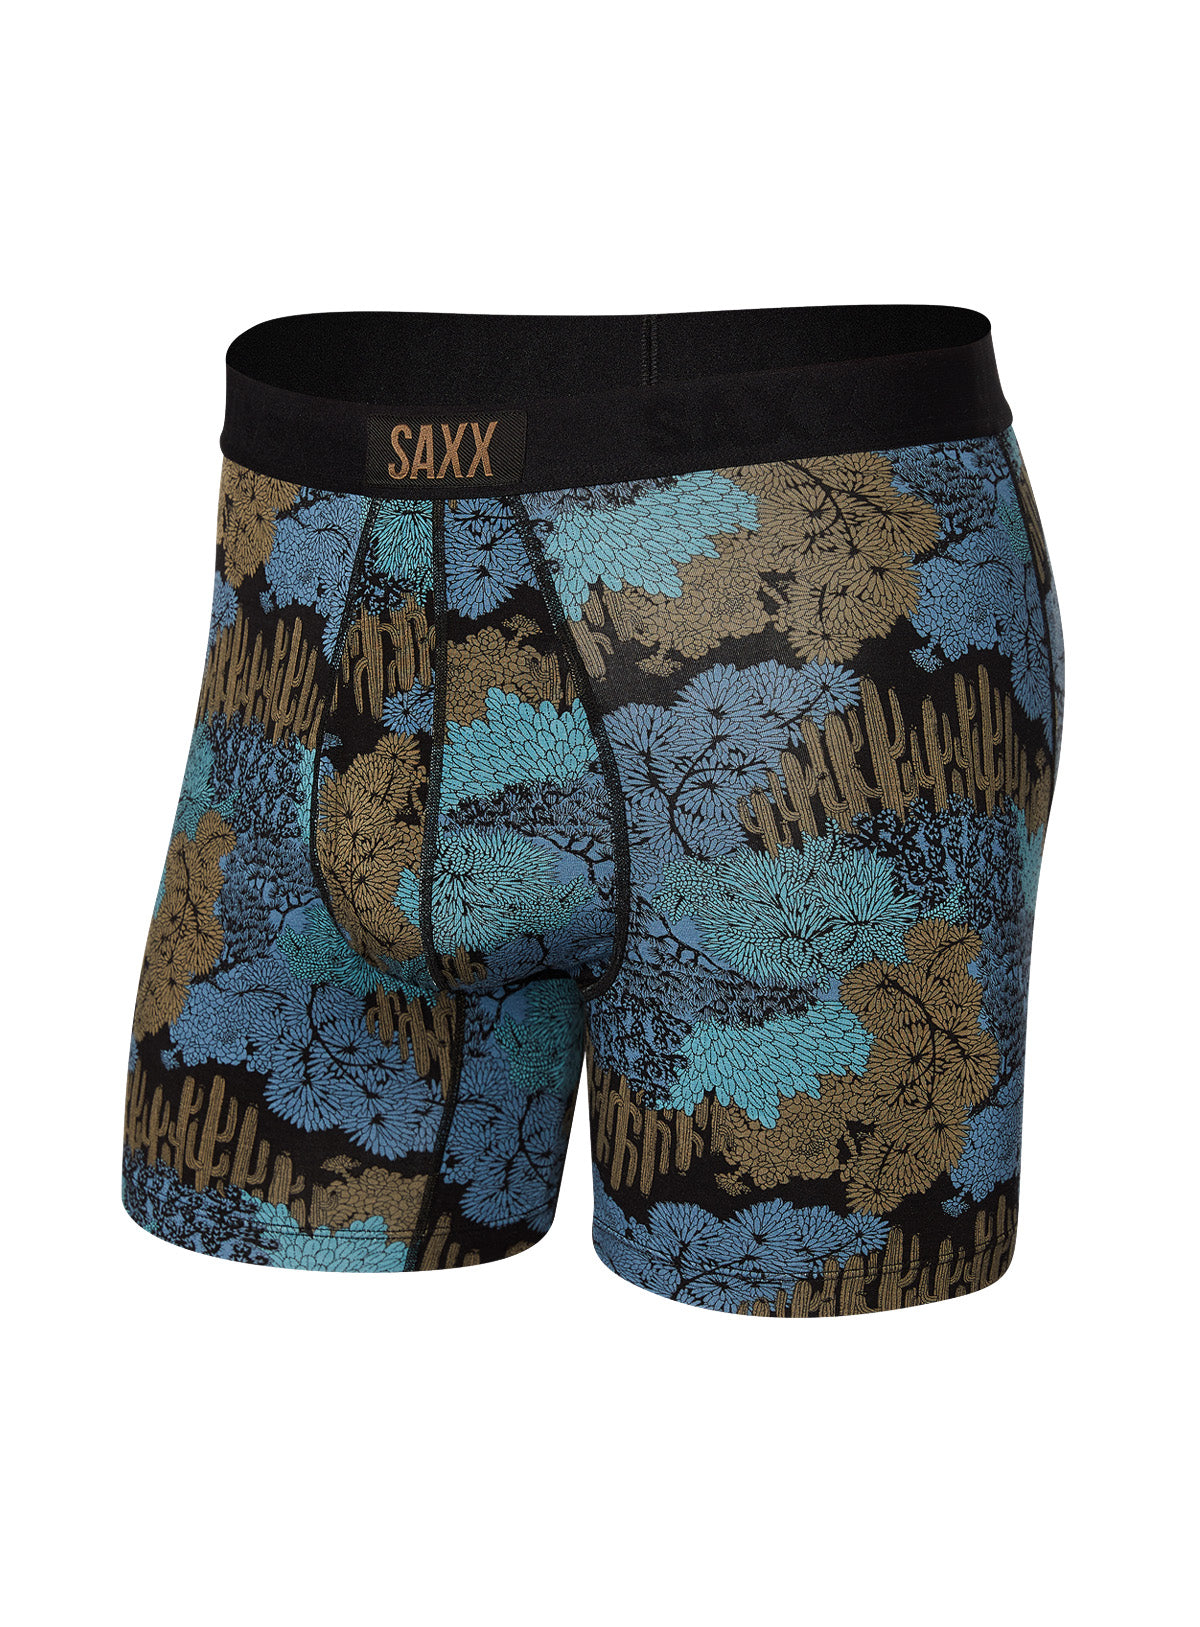 SPORTSMAN Men's Underwear Boxer Camo Woodland